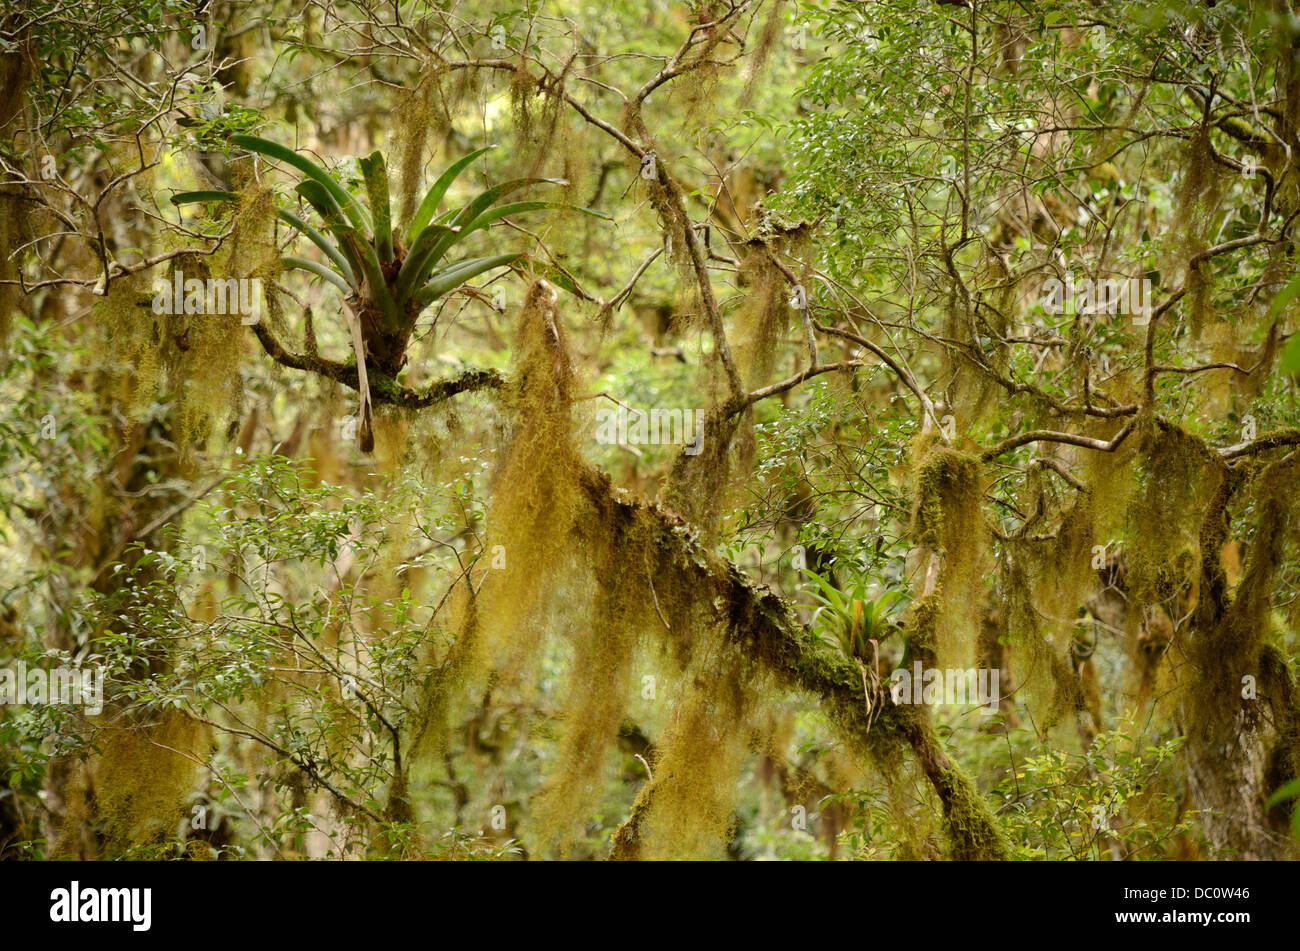 Lichen in rainforest Stock Photo